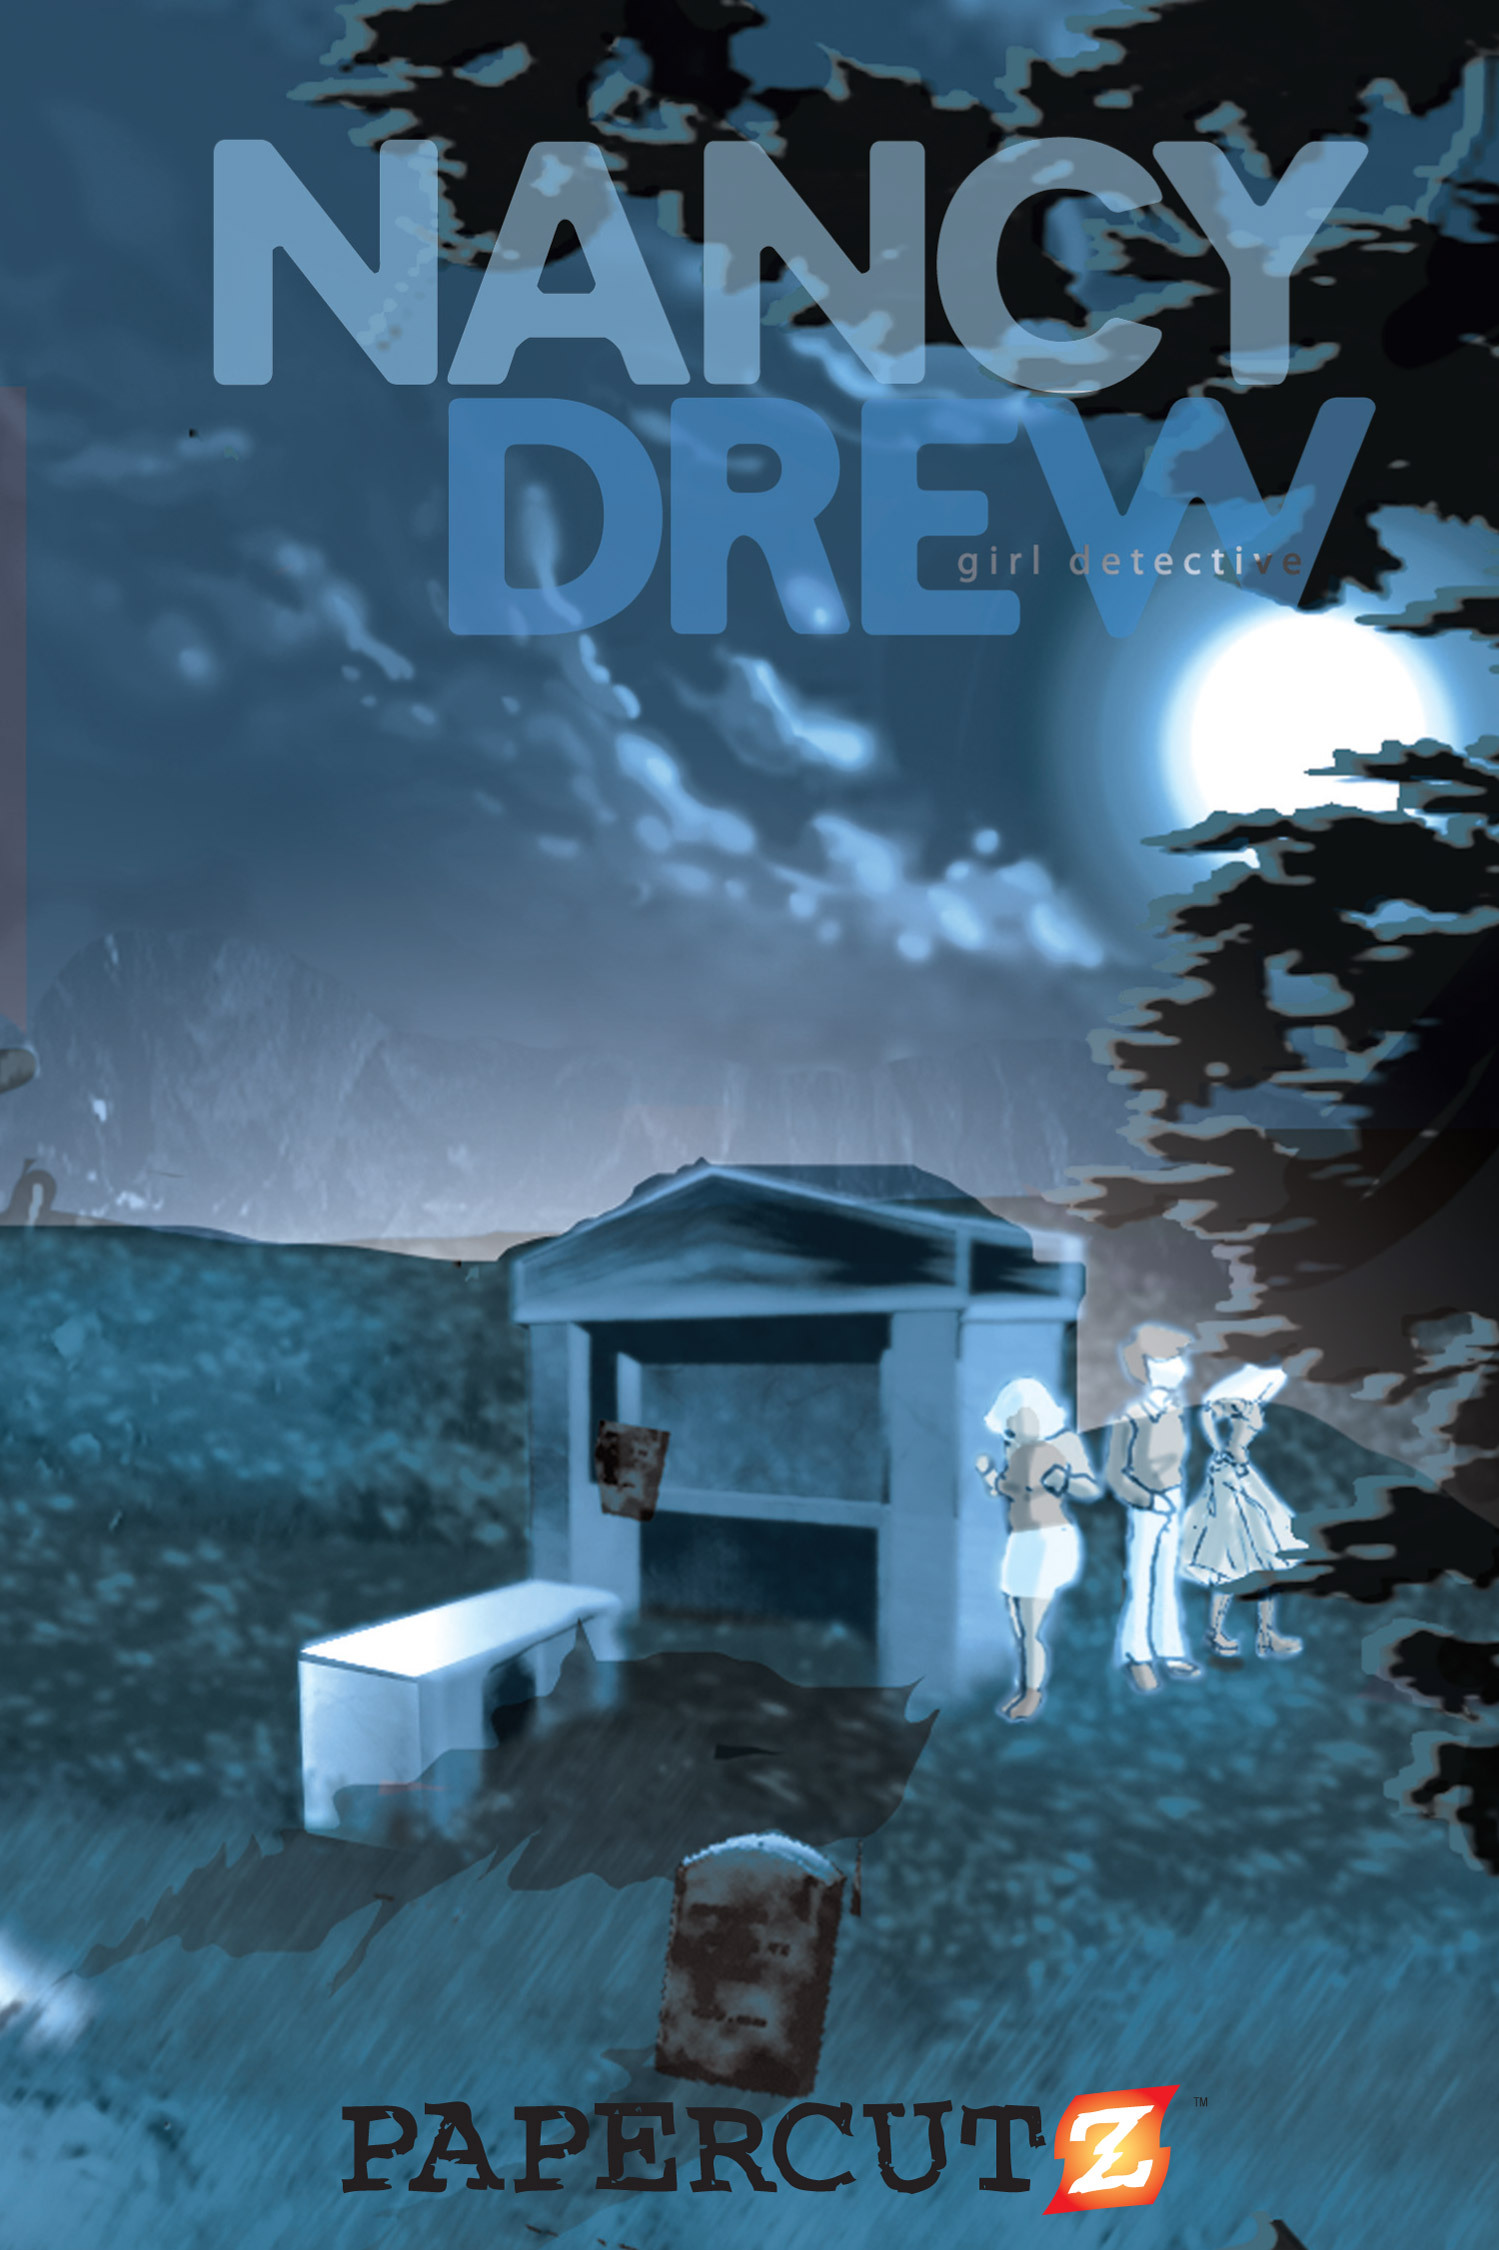 Read online Nancy Drew comic -  Issue #2 - 2